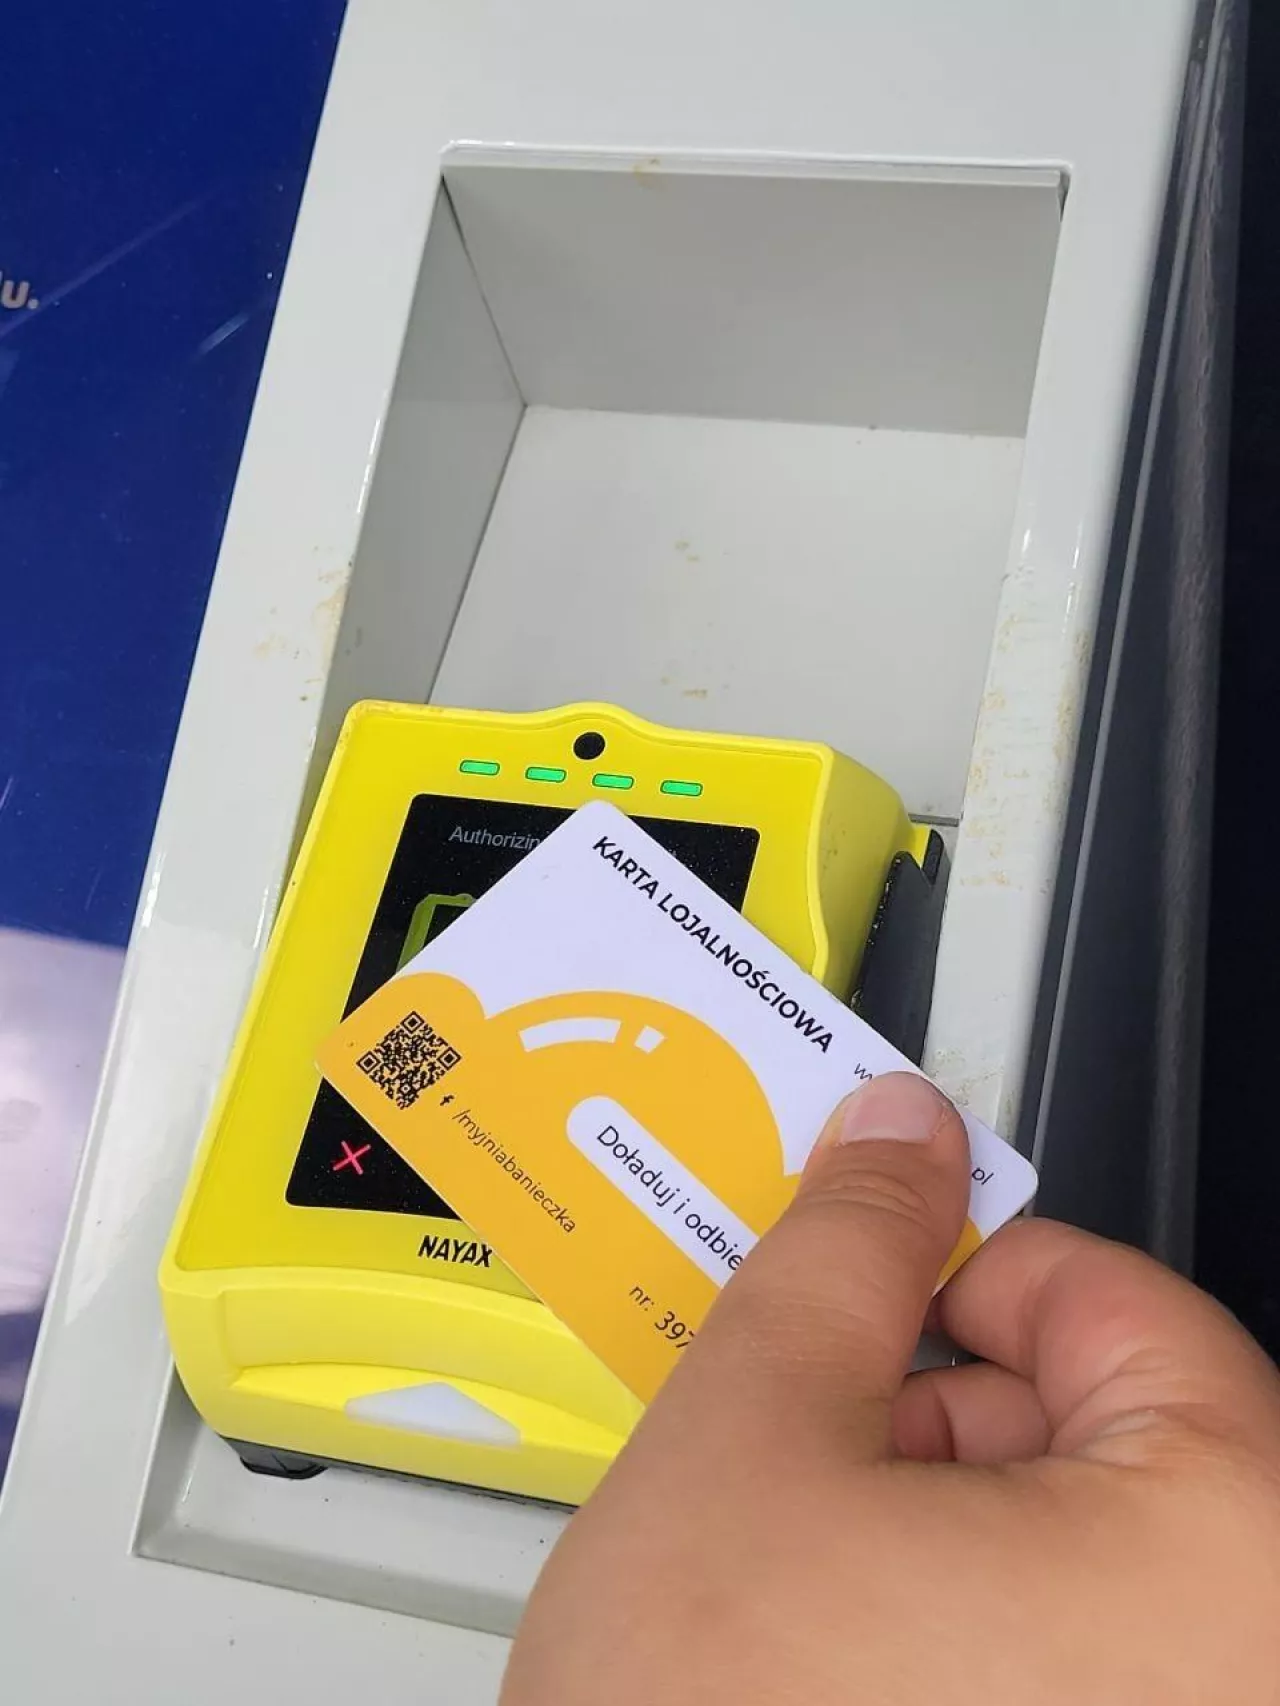 Banieczka wprowadza w swoich punktach maszyny vendingowe o nazwie ”Bąbelki” (fot. mat. pras.)